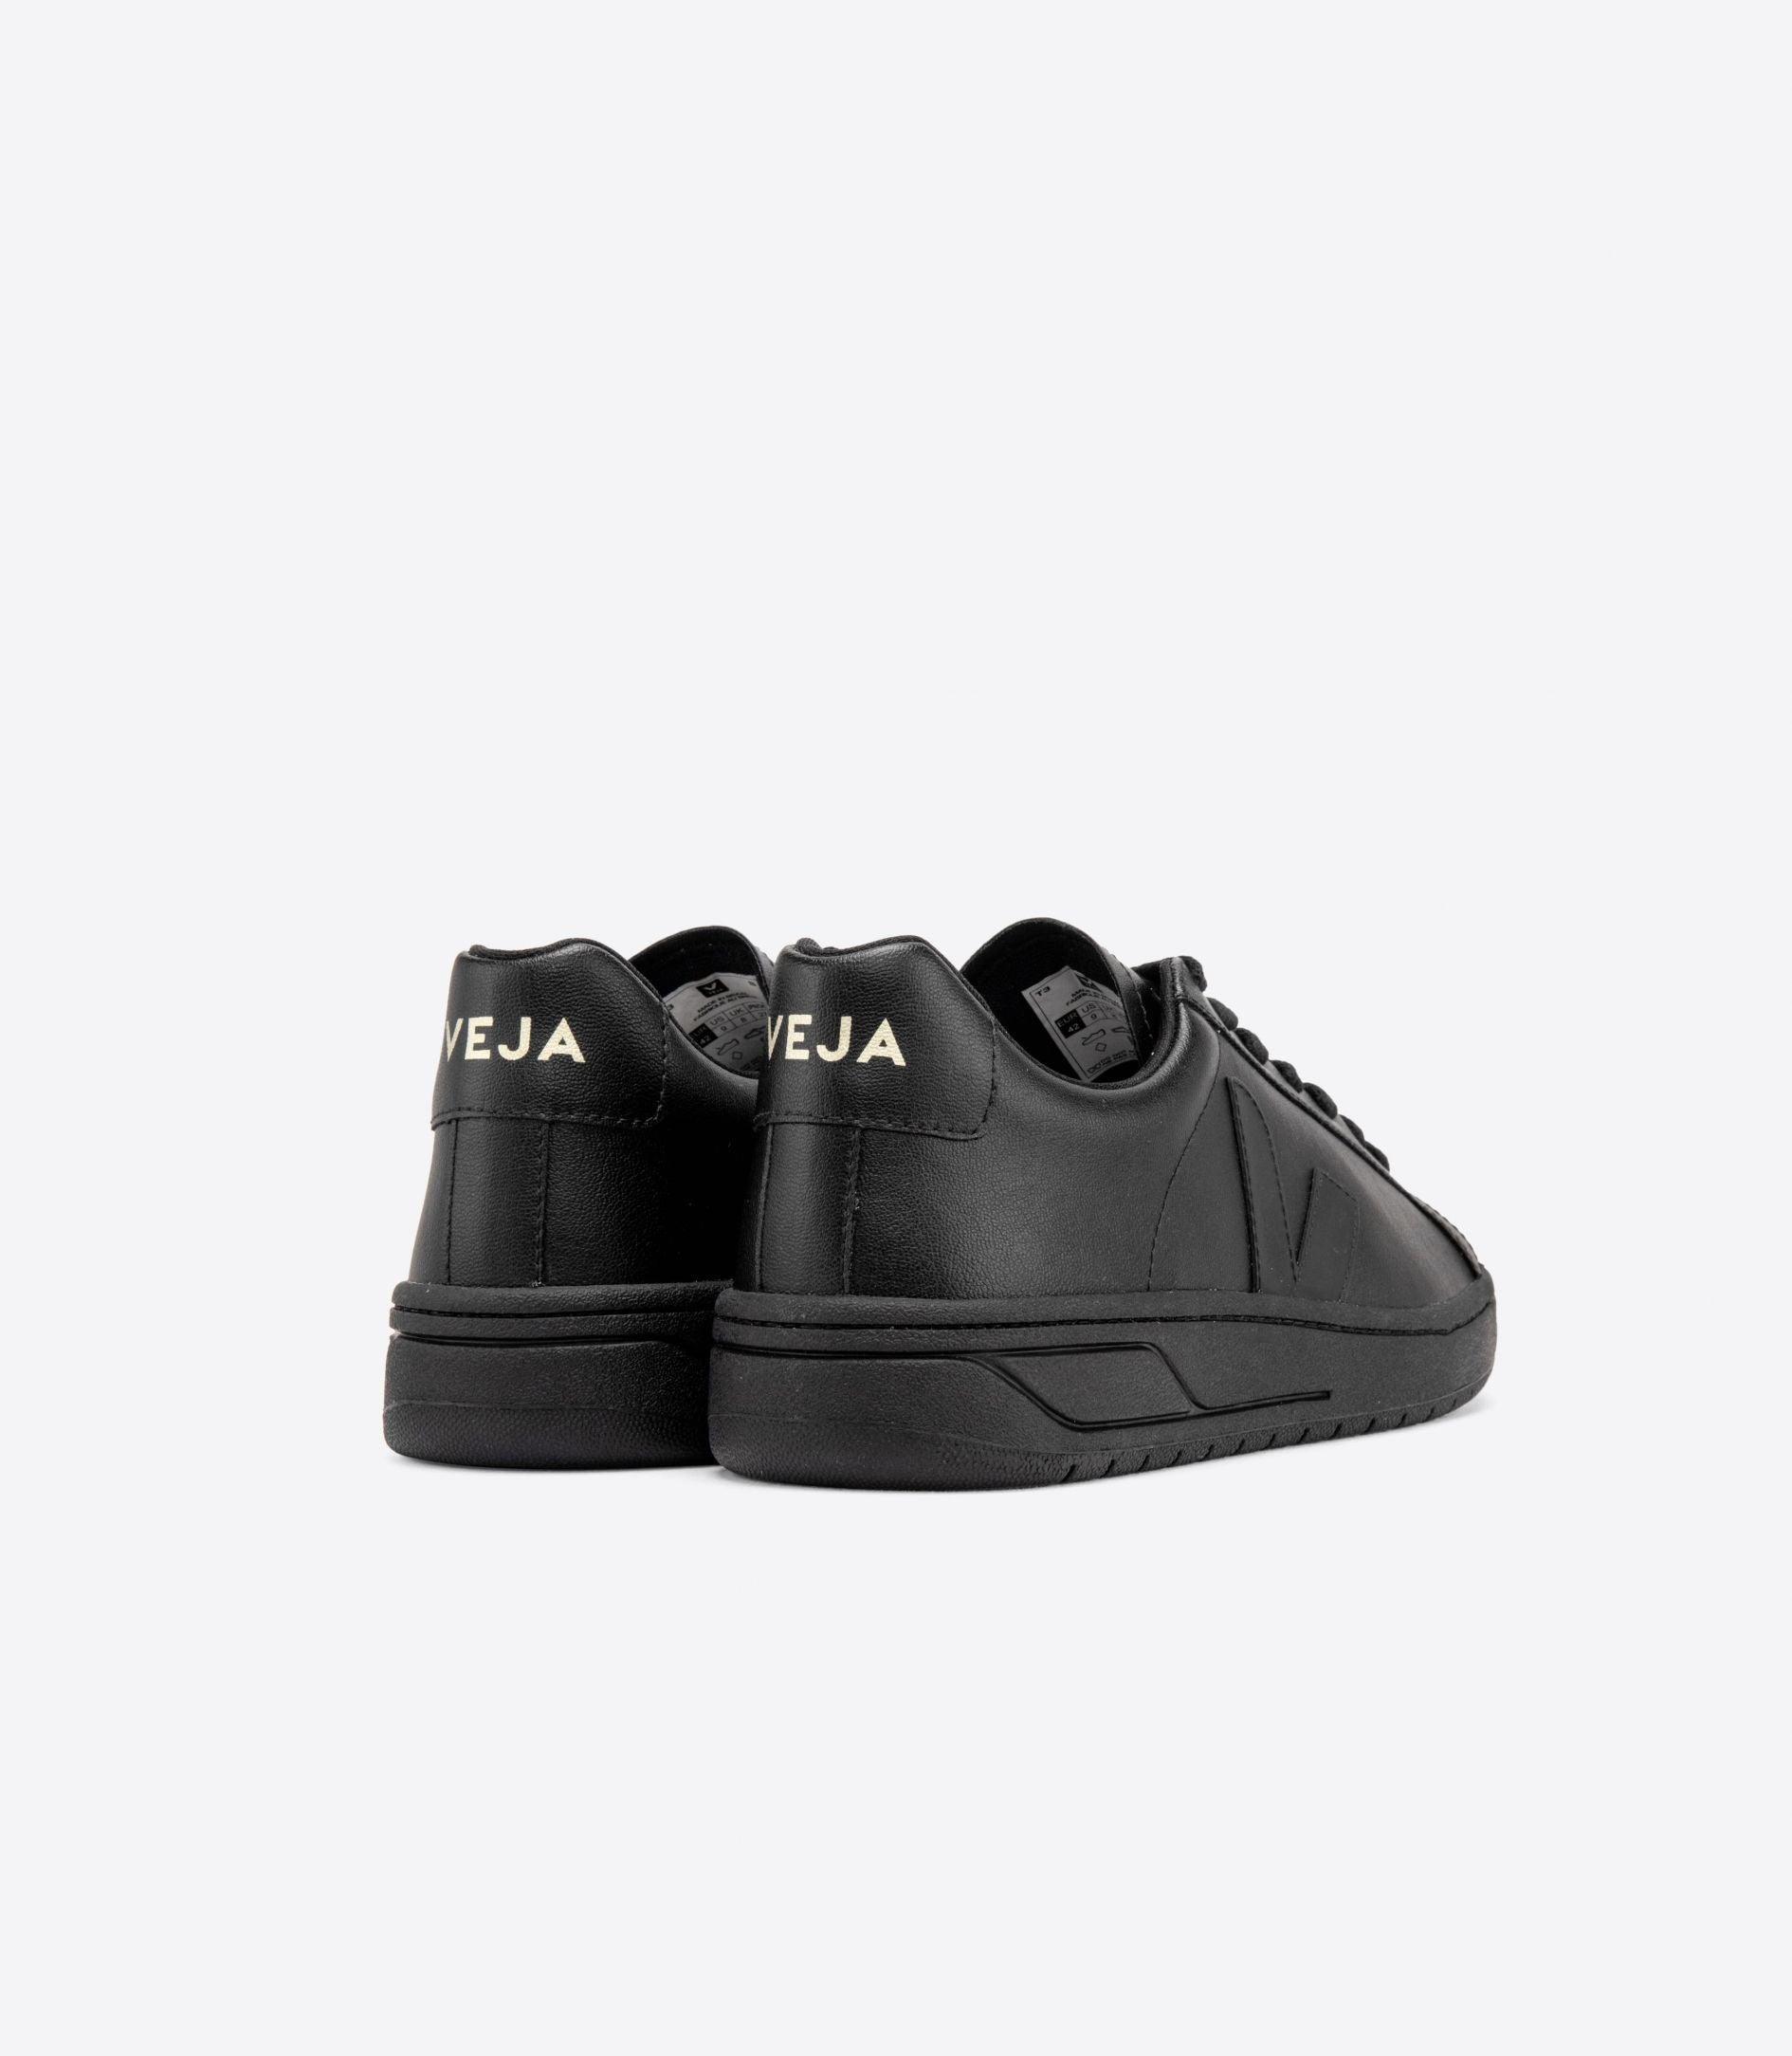 Veja - Urca Full Black Vegan Sneakers - 32 The Guild 